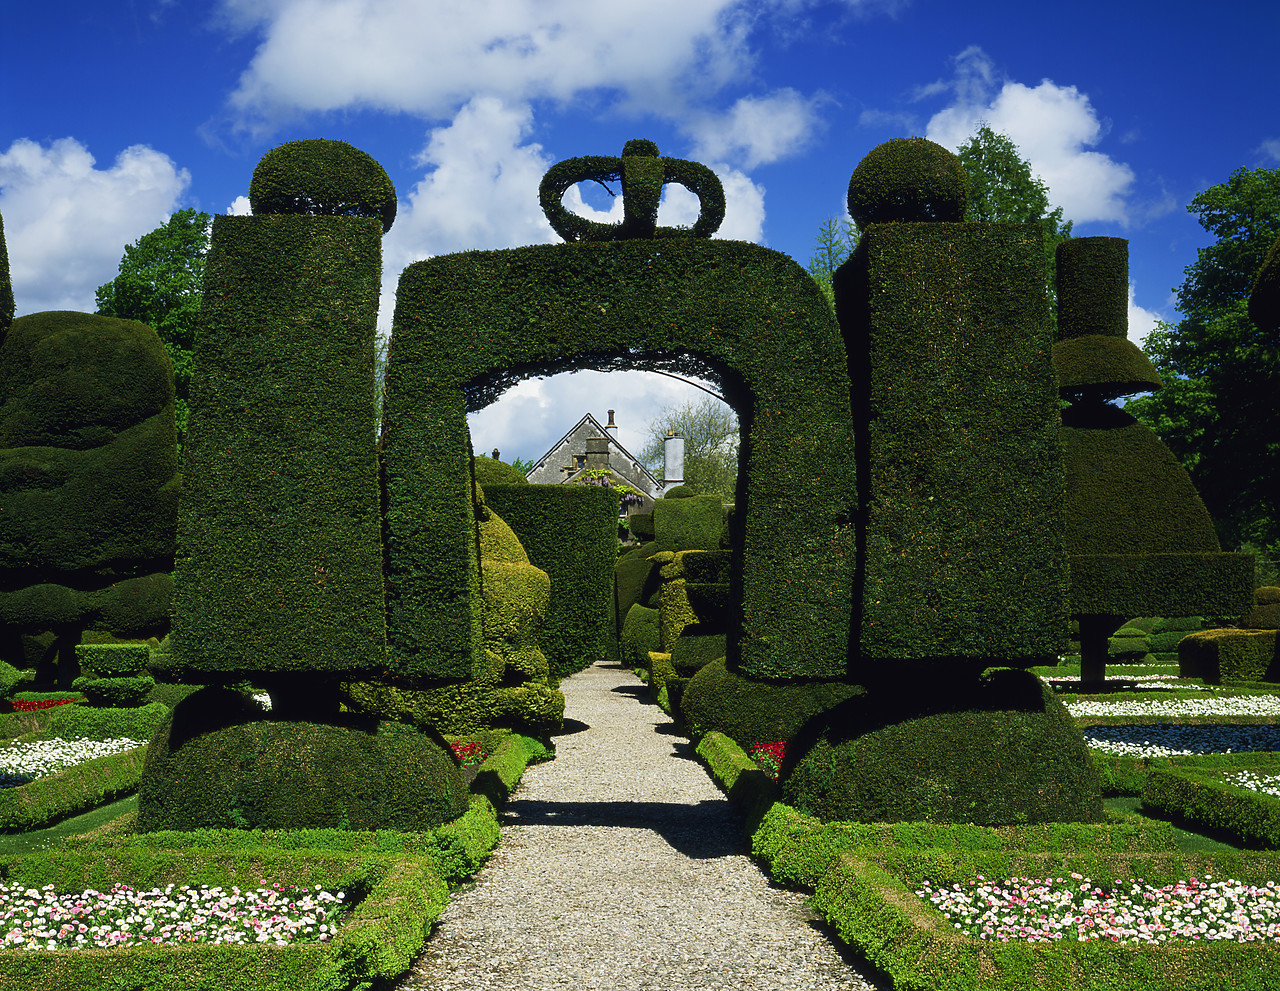 #030137-2 - Topiary Gardens, Levens Hall, Cumbria, England